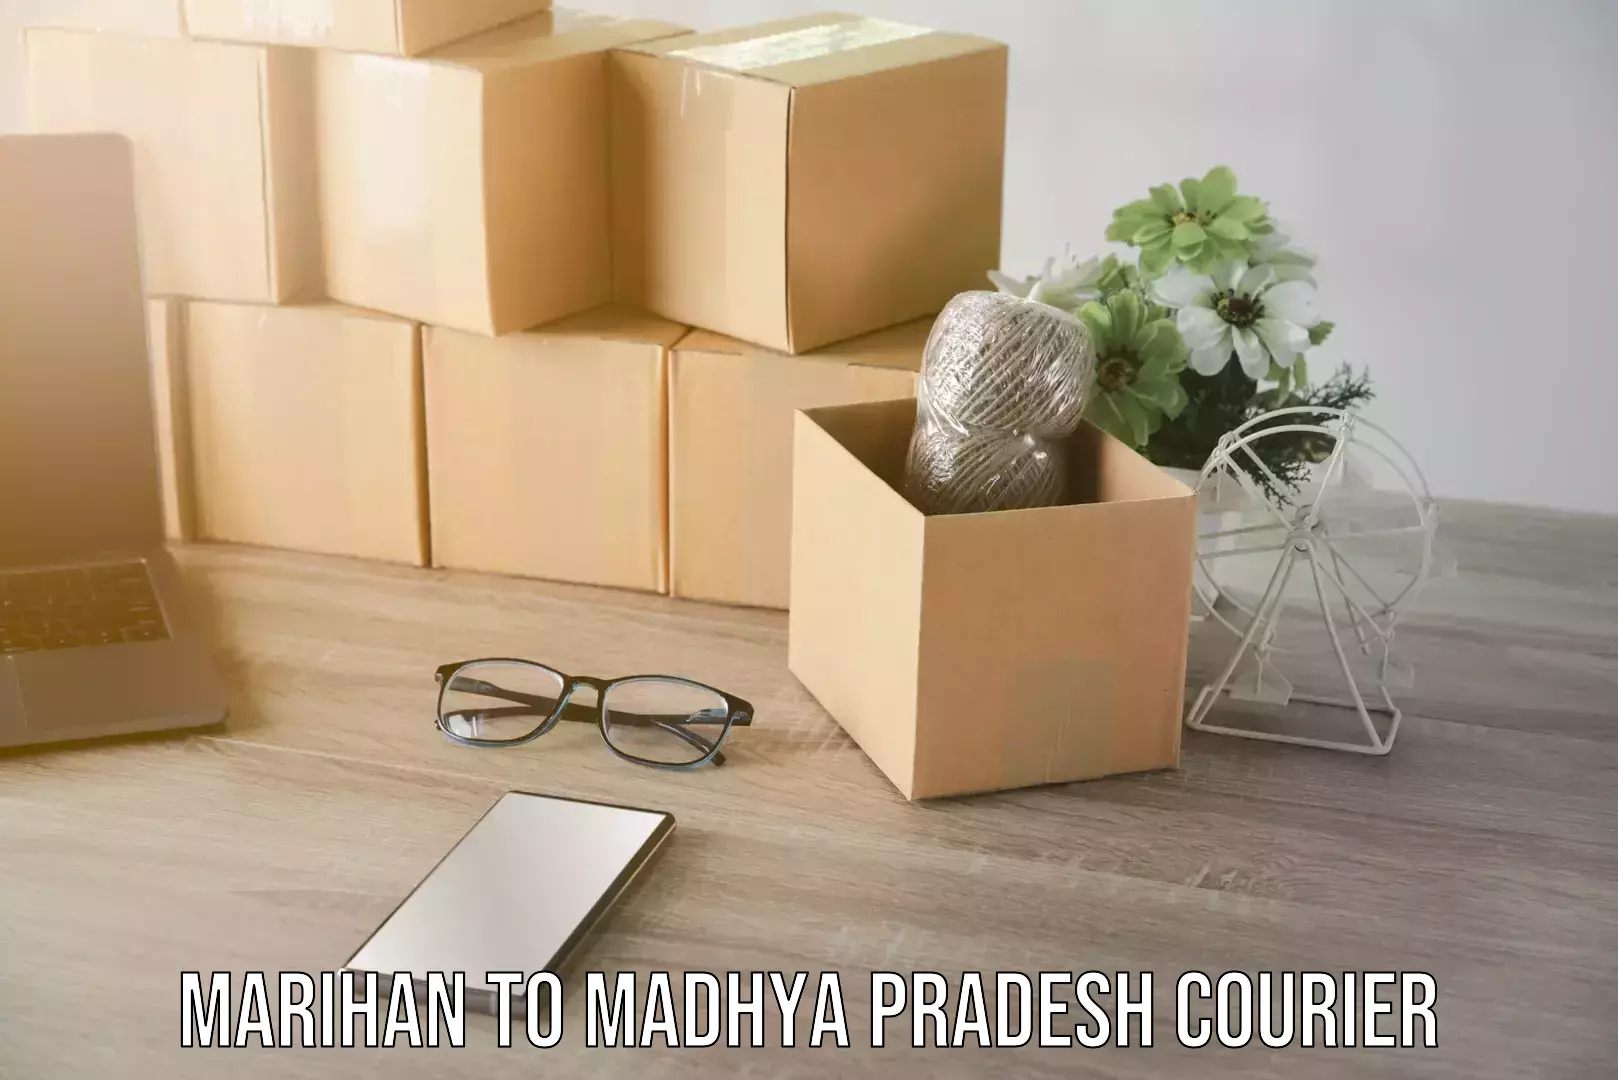 Moving and packing experts Marihan to Madhya Pradesh